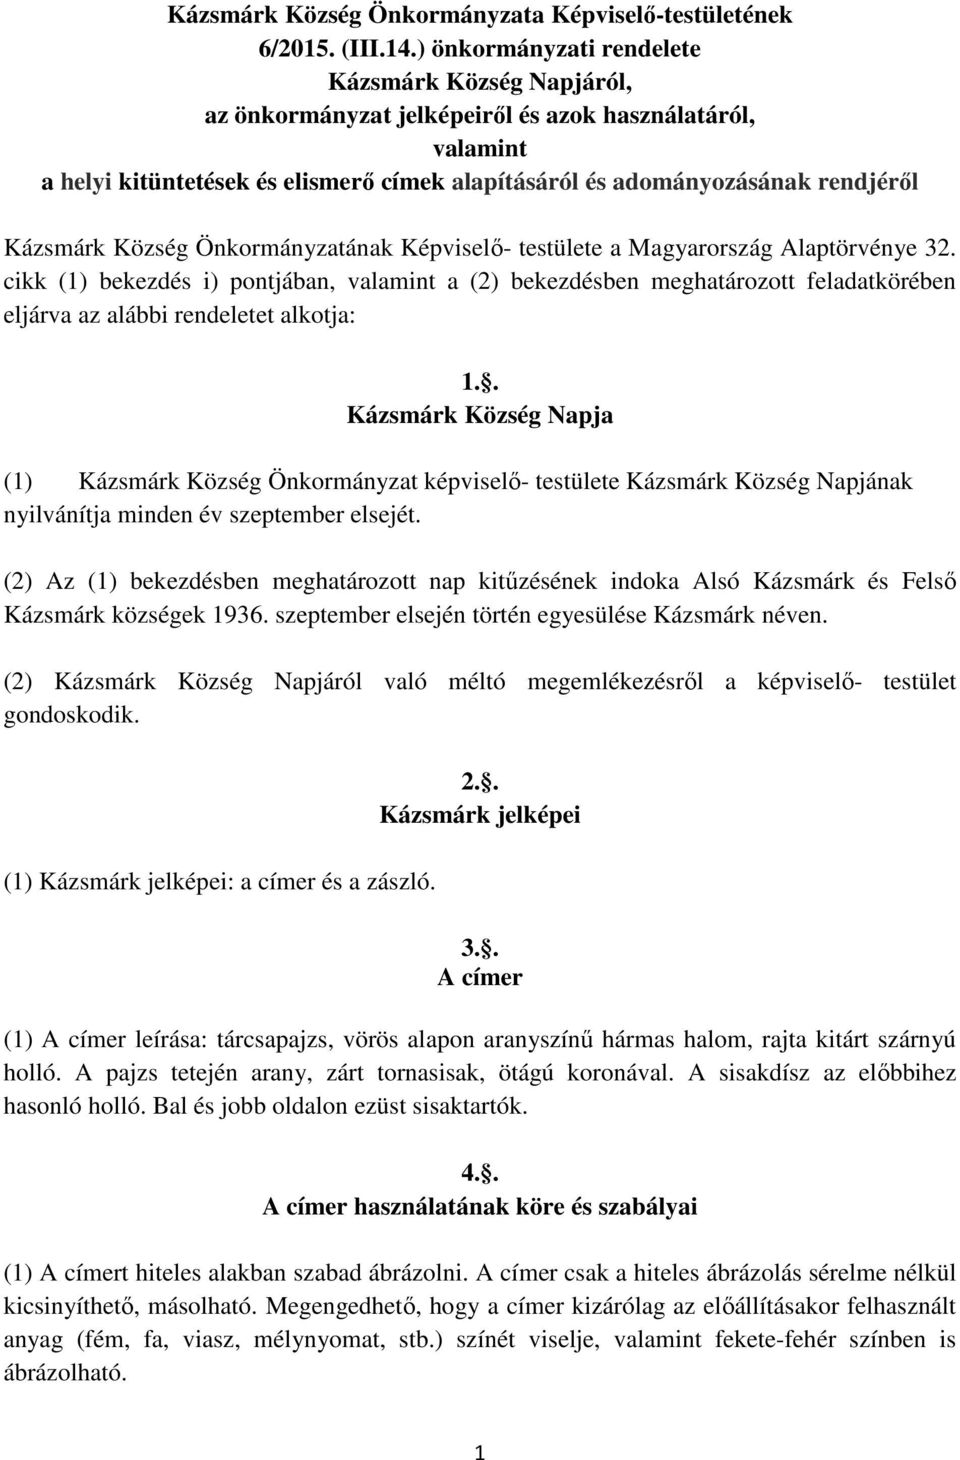 Kázsmárk Község Önkormányzatának Képviselő- testülete a Magyarország Alaptörvénye 32.